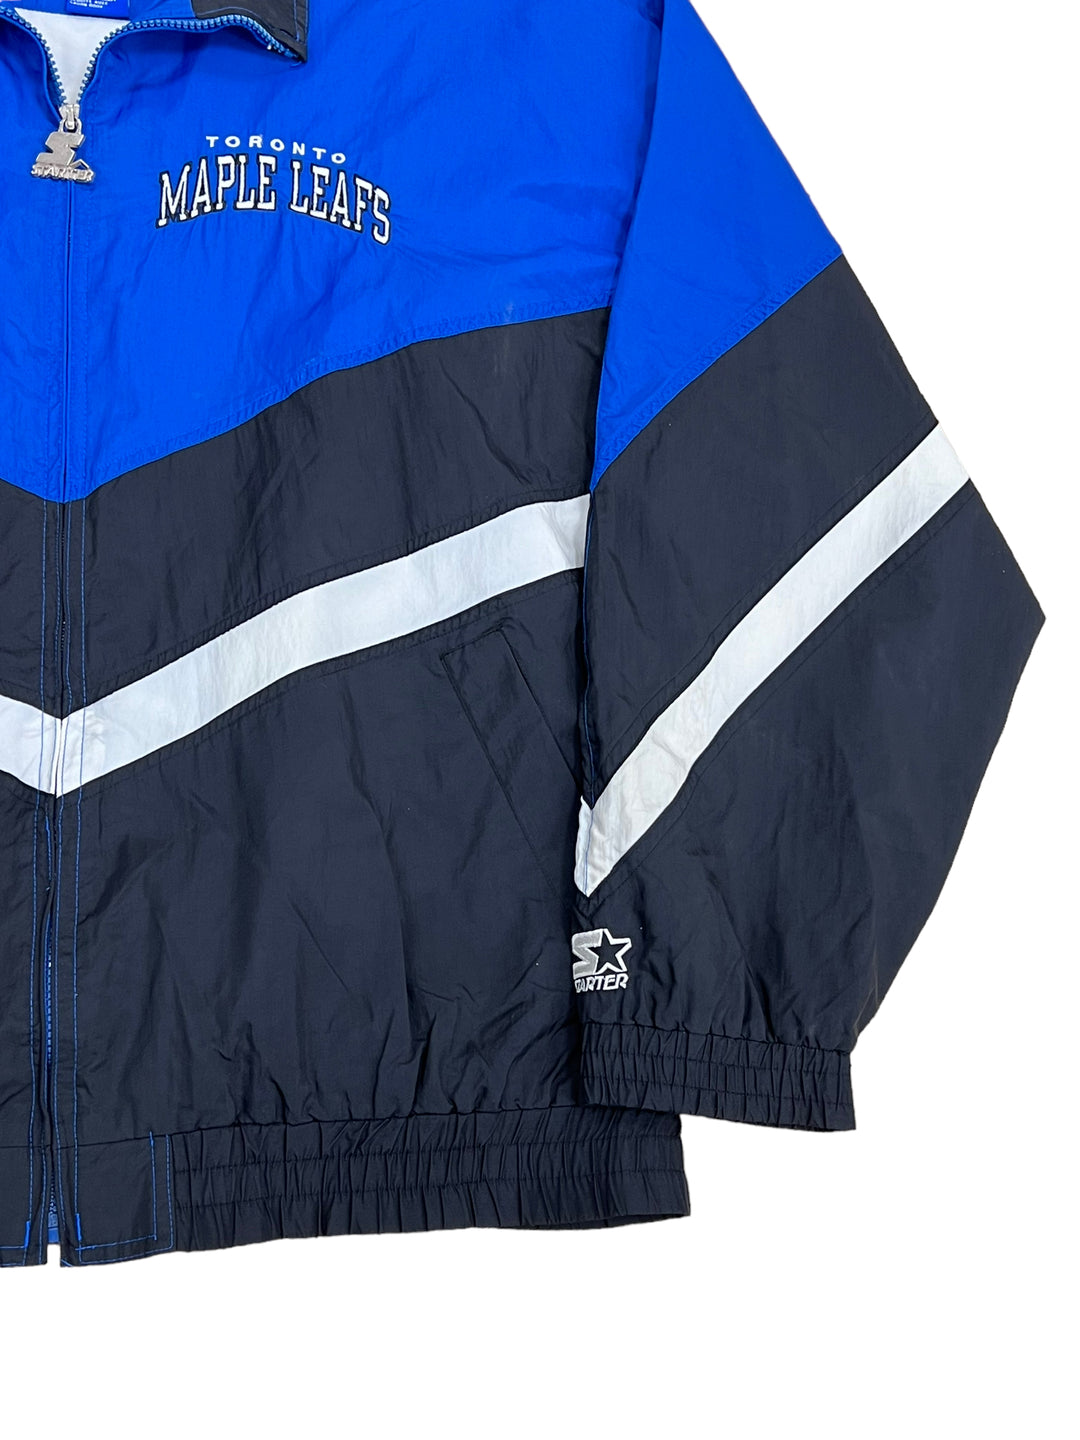 Vintage 1990s Toronto Maple Leafs NHL Starter Jacket / Color 